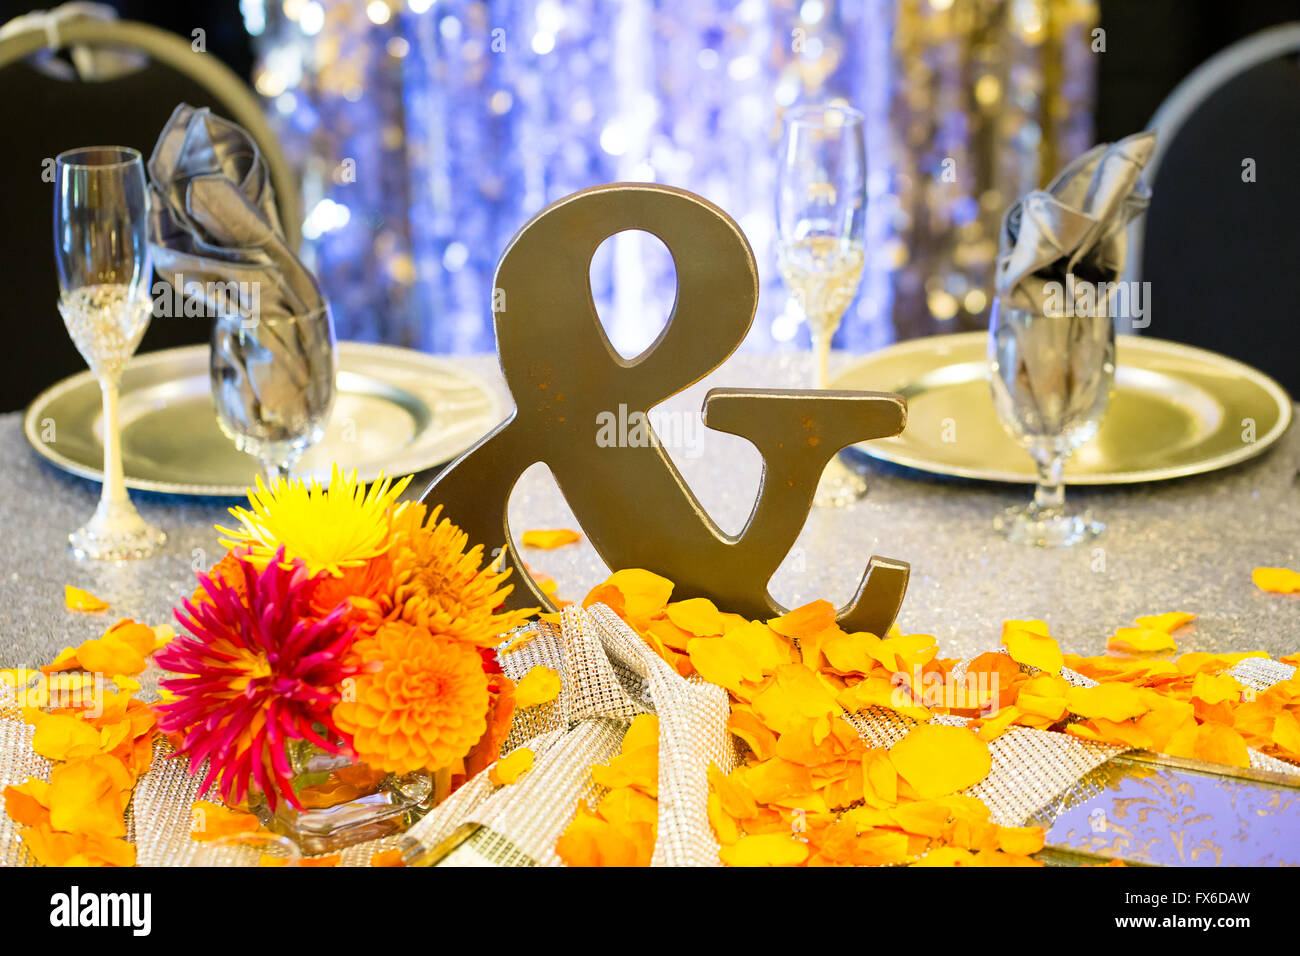 Réception de Mariage Décoration avec ce métal esperluette signer à la table pour les mariés. Banque D'Images